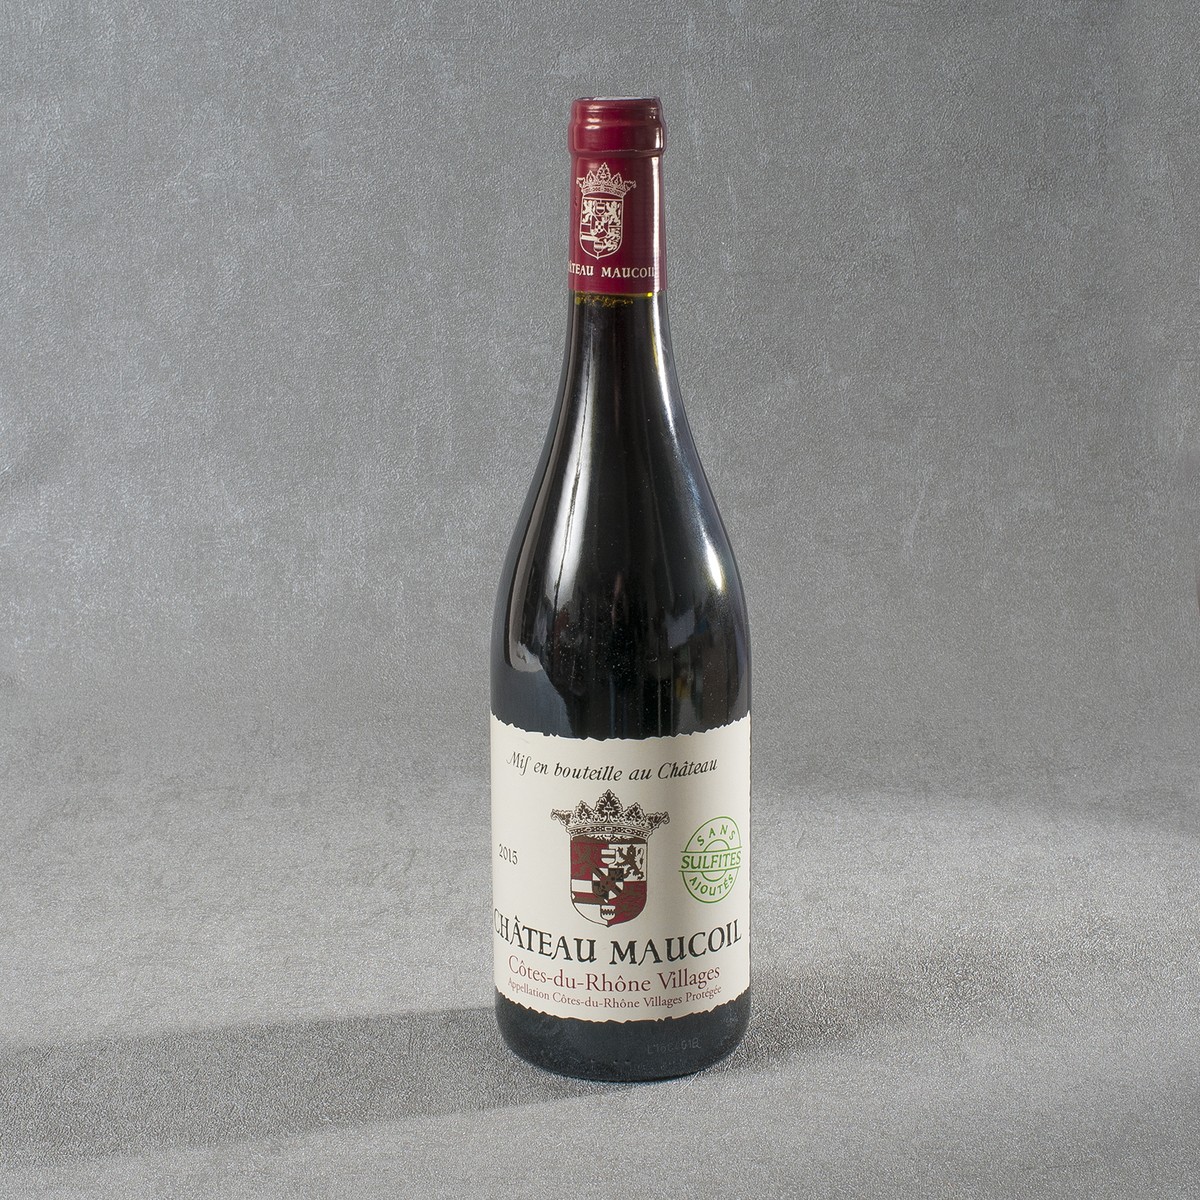   Château Maucoil. Côtes du Rhône Vin Nature Rge Bio 2015  0.75 L